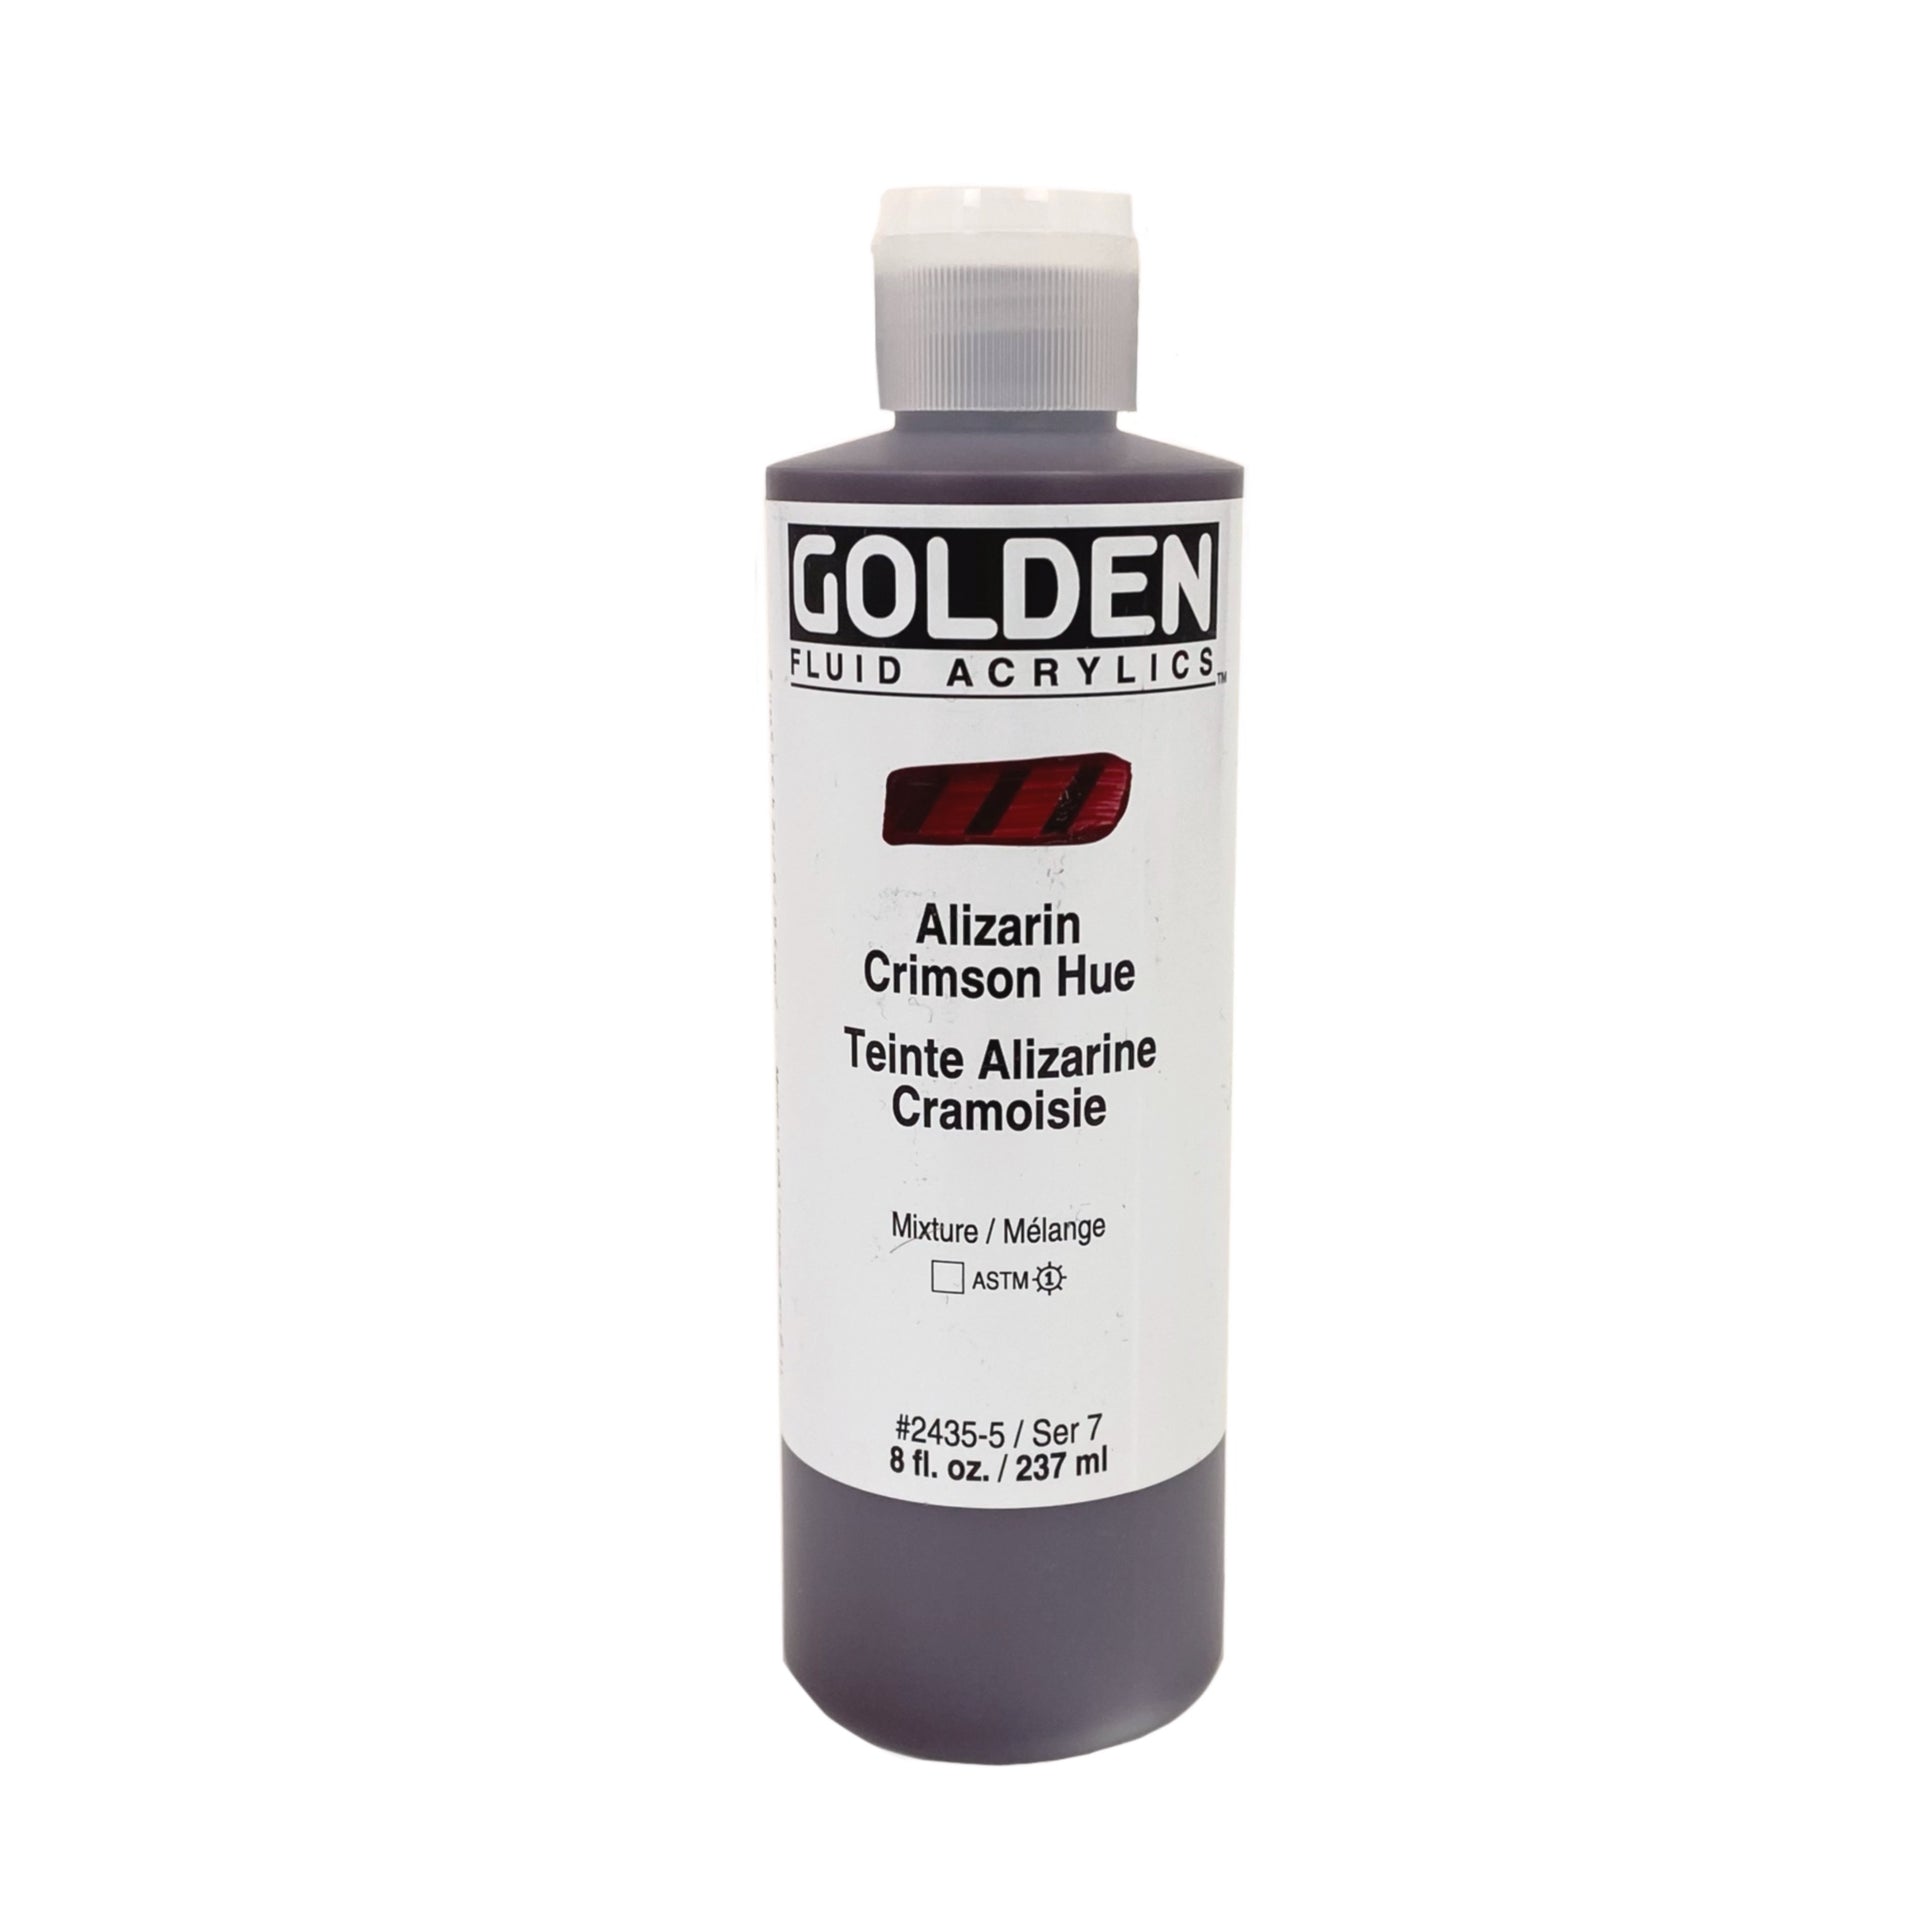 Golden Fluid Acrylic Paint, 4 oz, Alizarin Crimson Hue